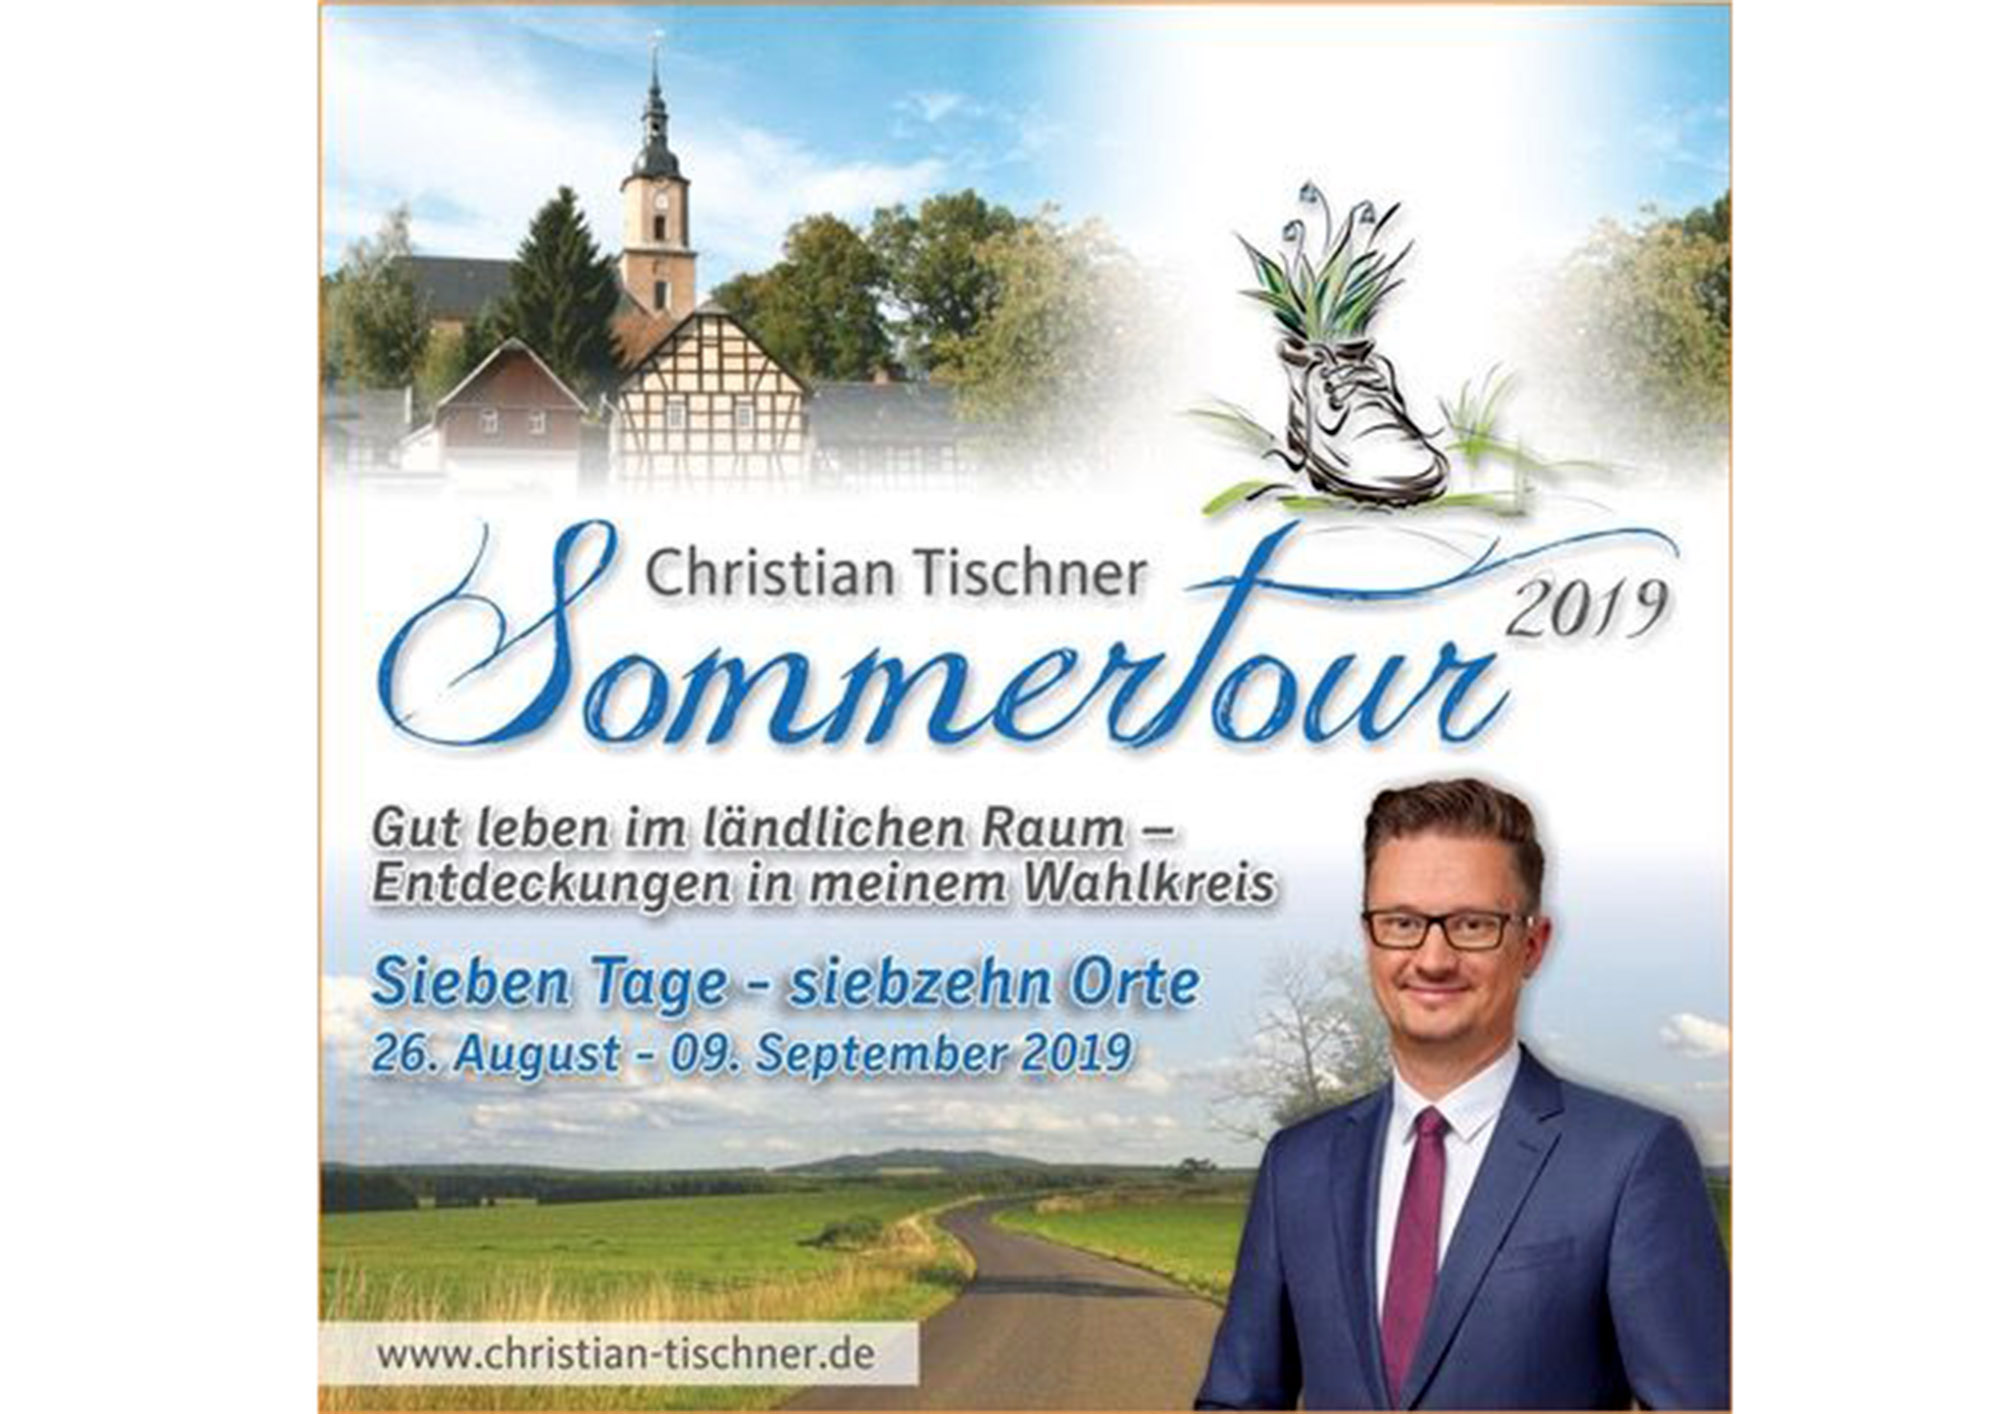 Zum fünften Mal geht CDU-Landtagsabgeordneter Christian Tischner auf Sommertour durch seinen Wahlkreis